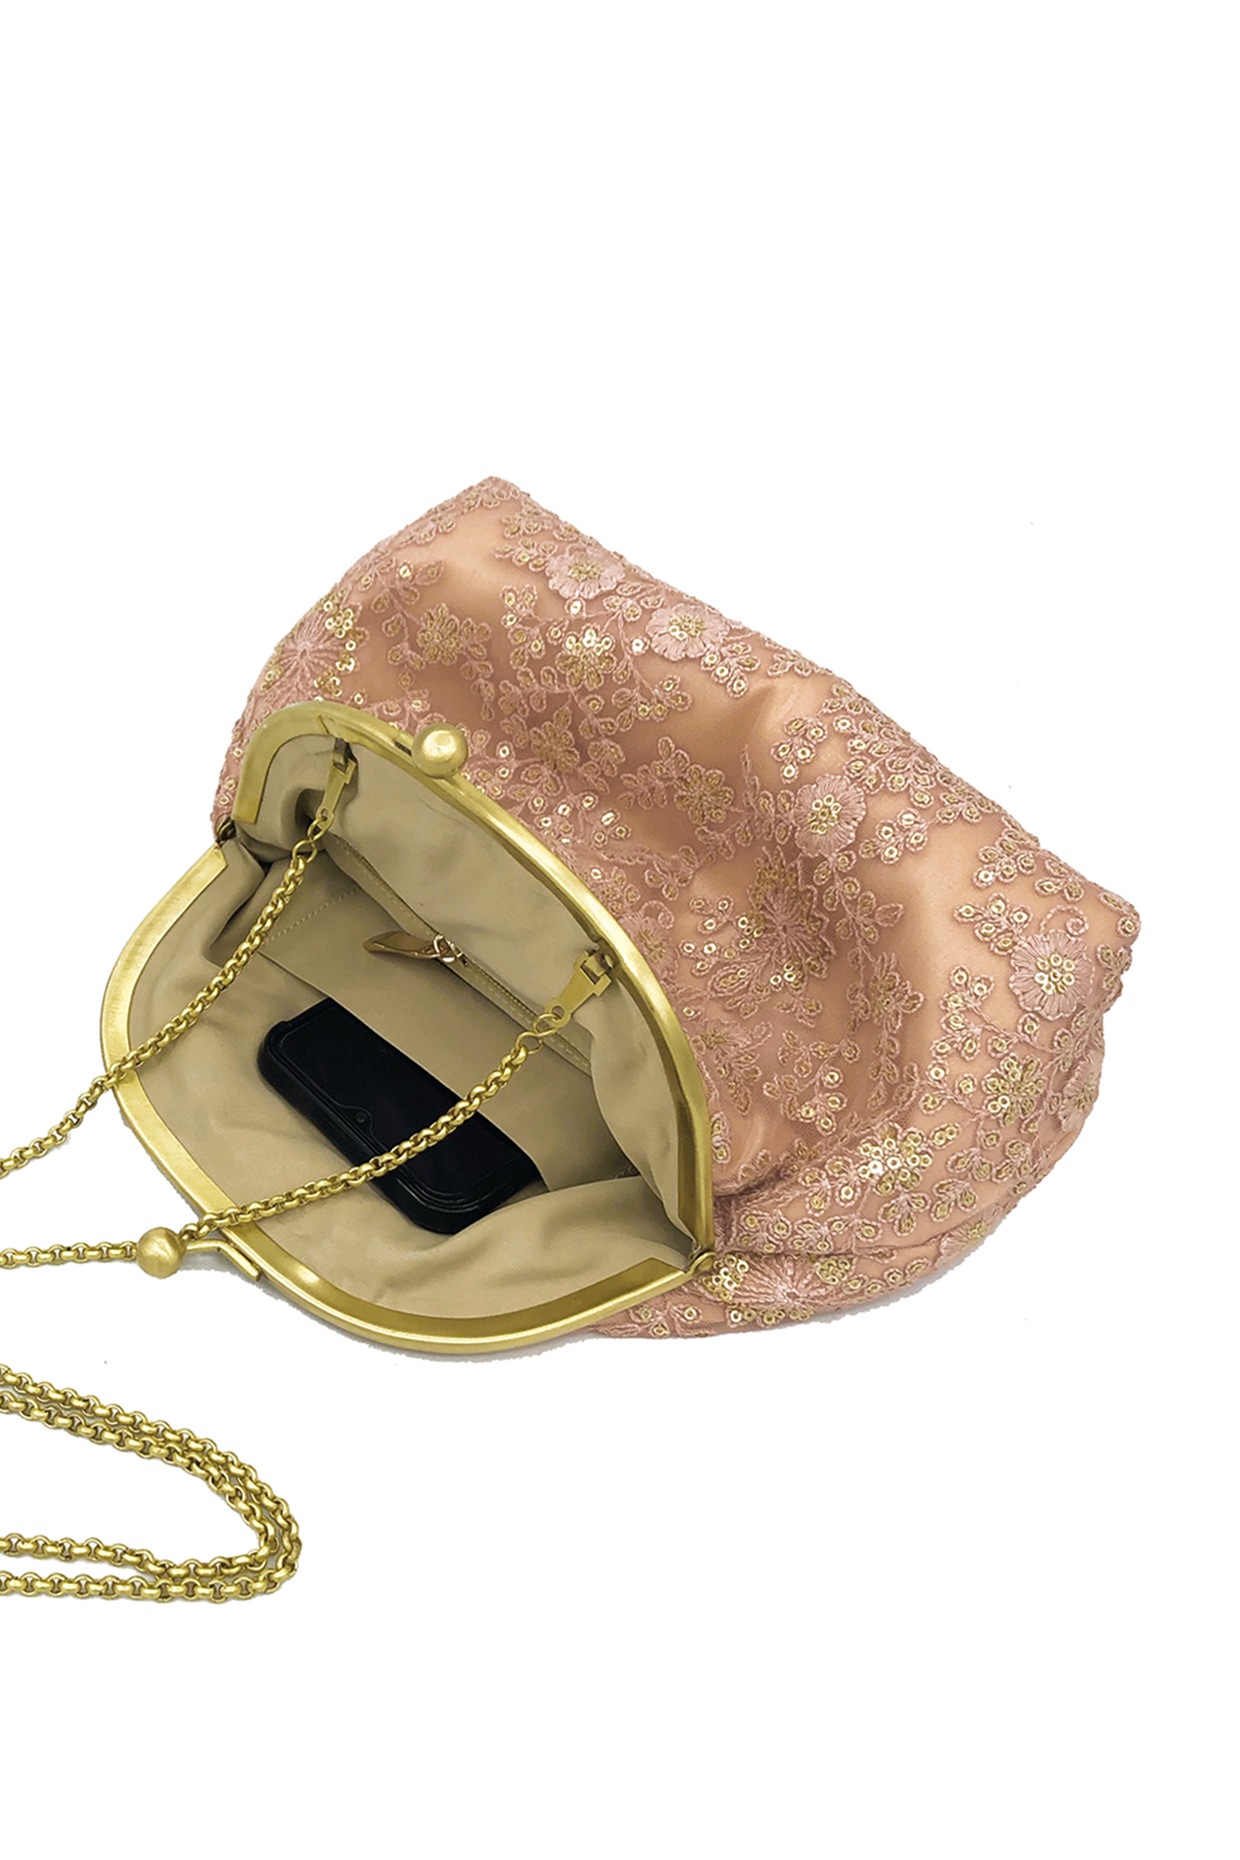 Buy Women Peach Textured Casual Handbag Online - 761233 | Van Heusen